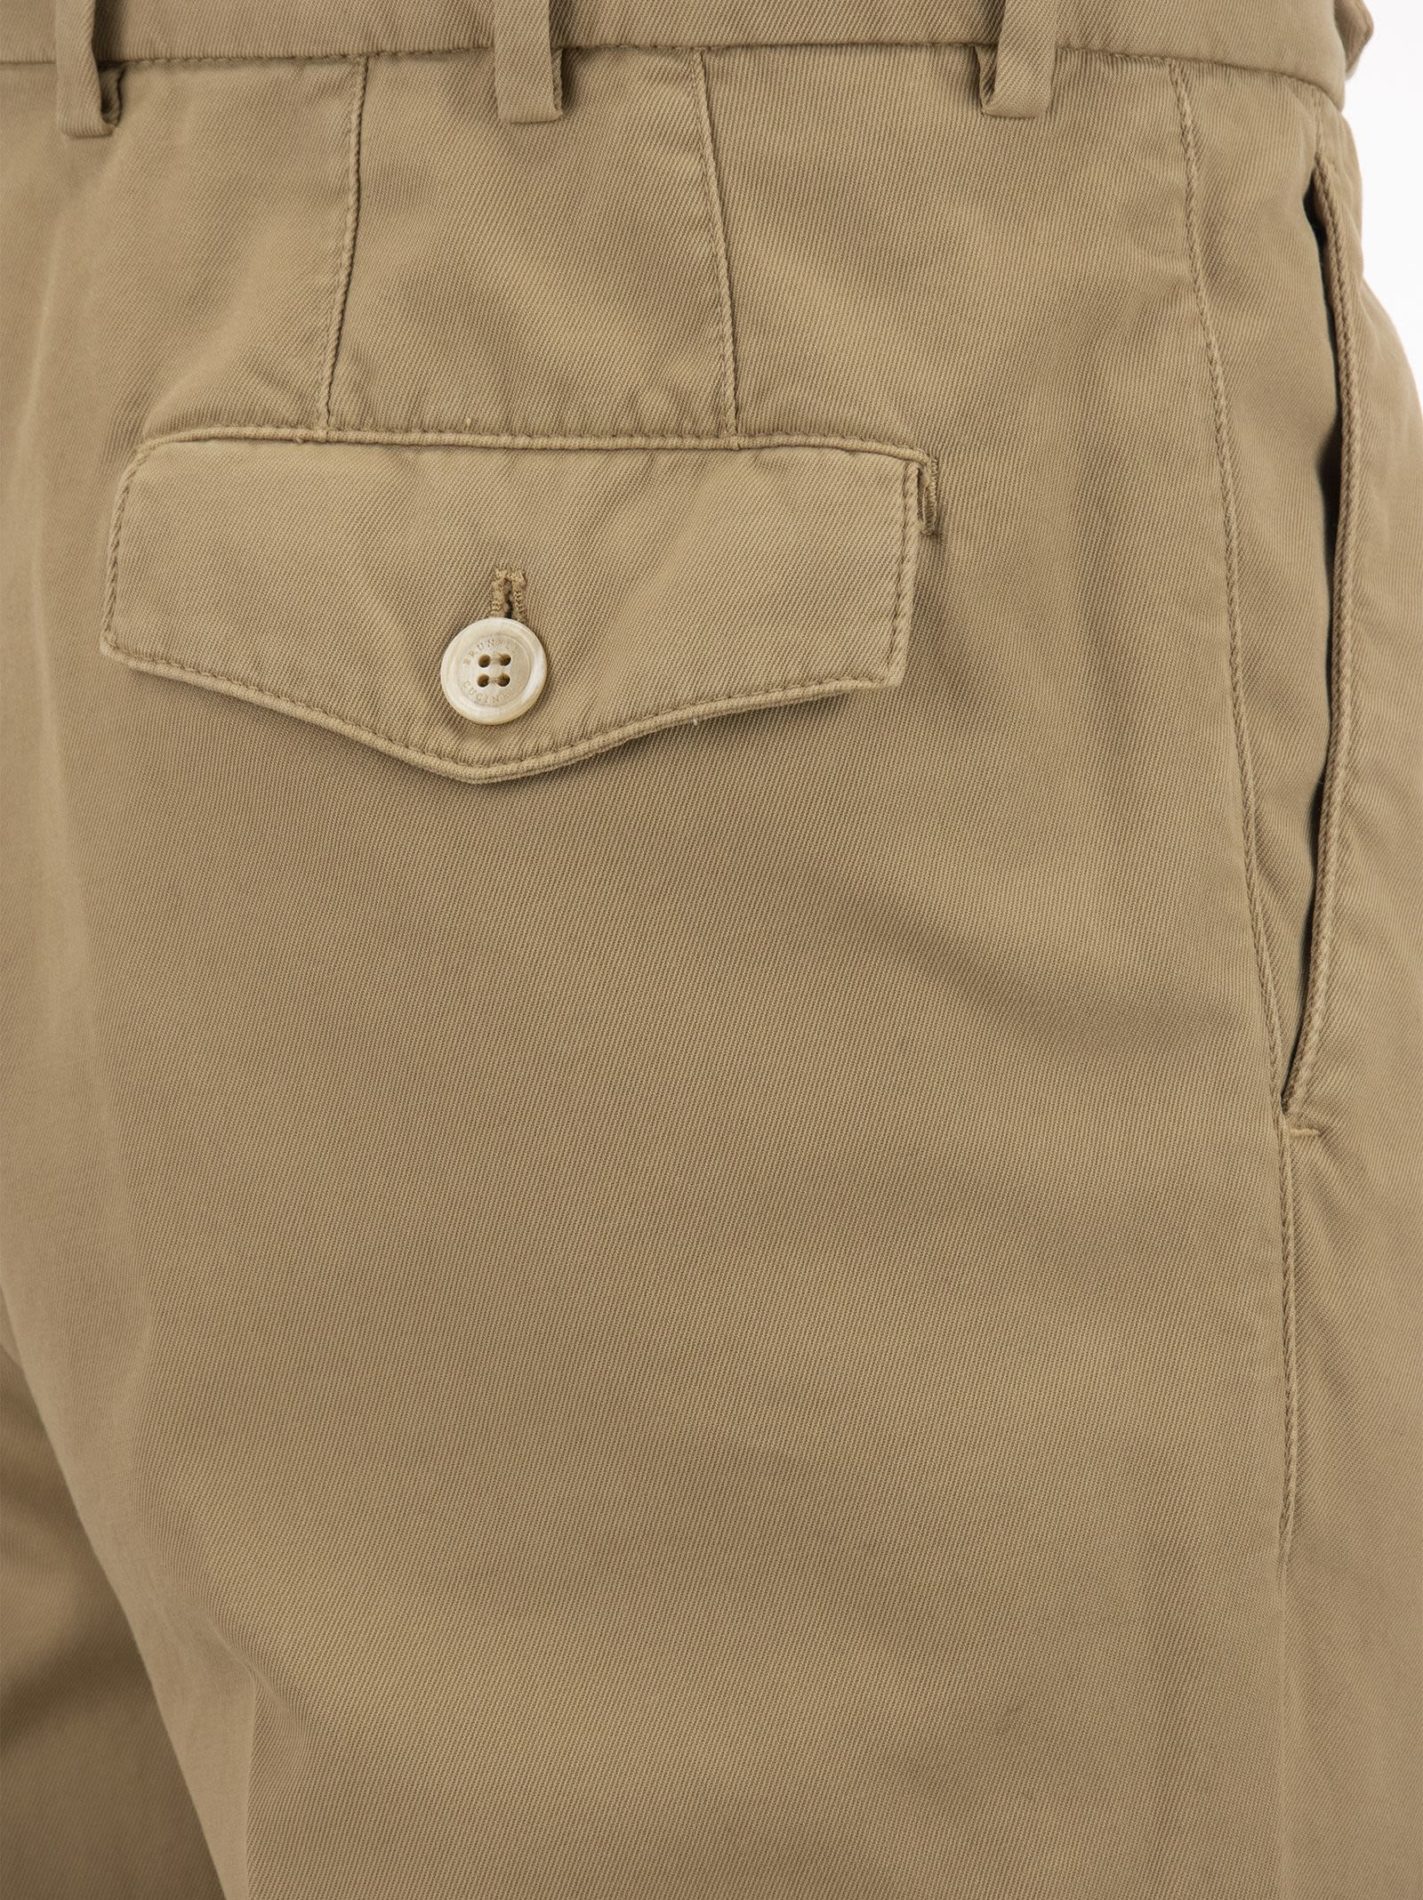 Pantalone leisure fit in gabardina di cotone ritorto tinto capo con doppia  pince e tirapancia - Bellettini.com